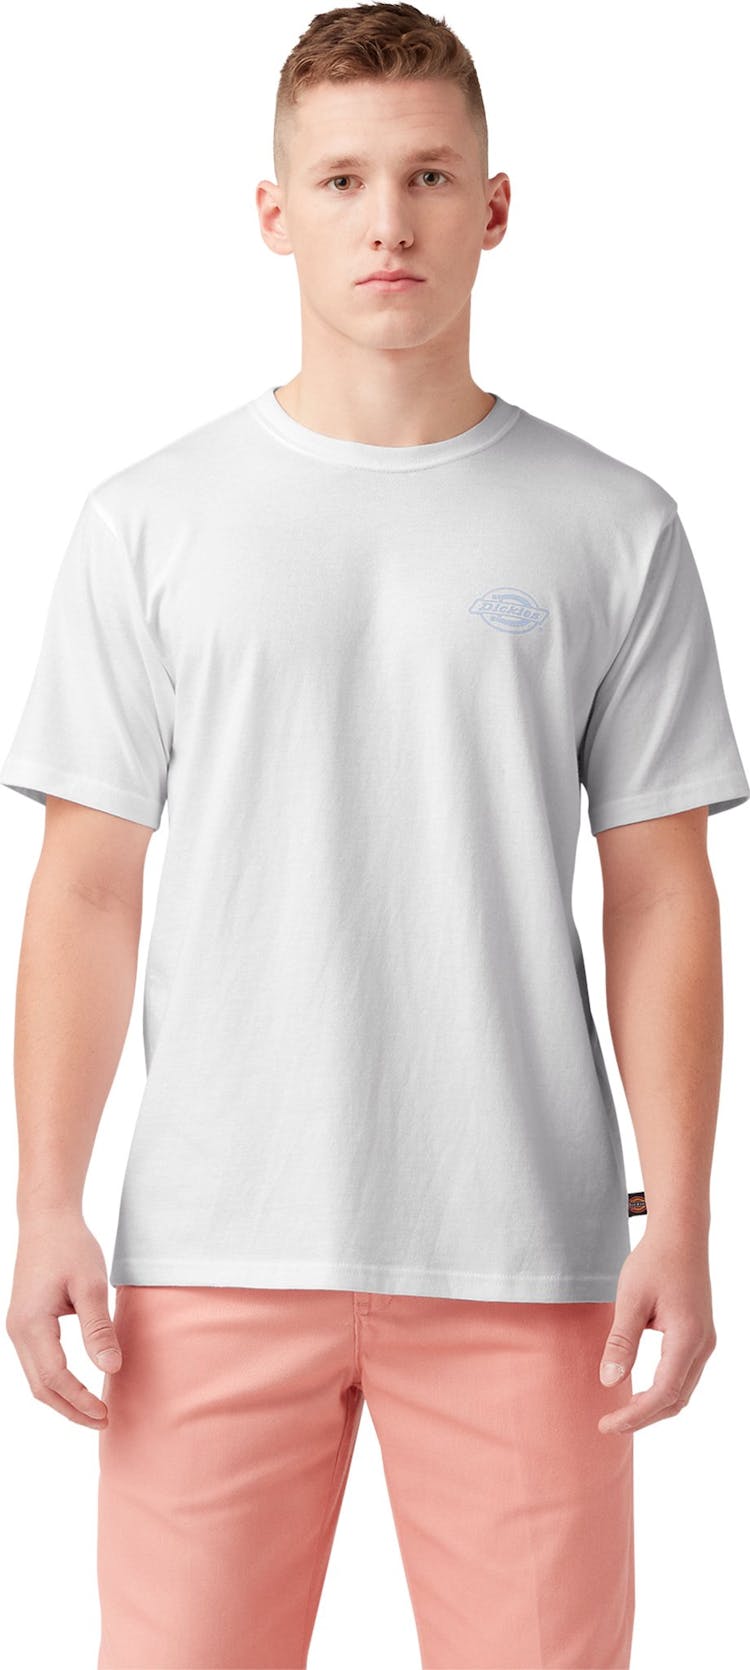 Numéro de l'image de la galerie de produits 1 pour le produit T-shirt graphique avec logo au dos - Homme